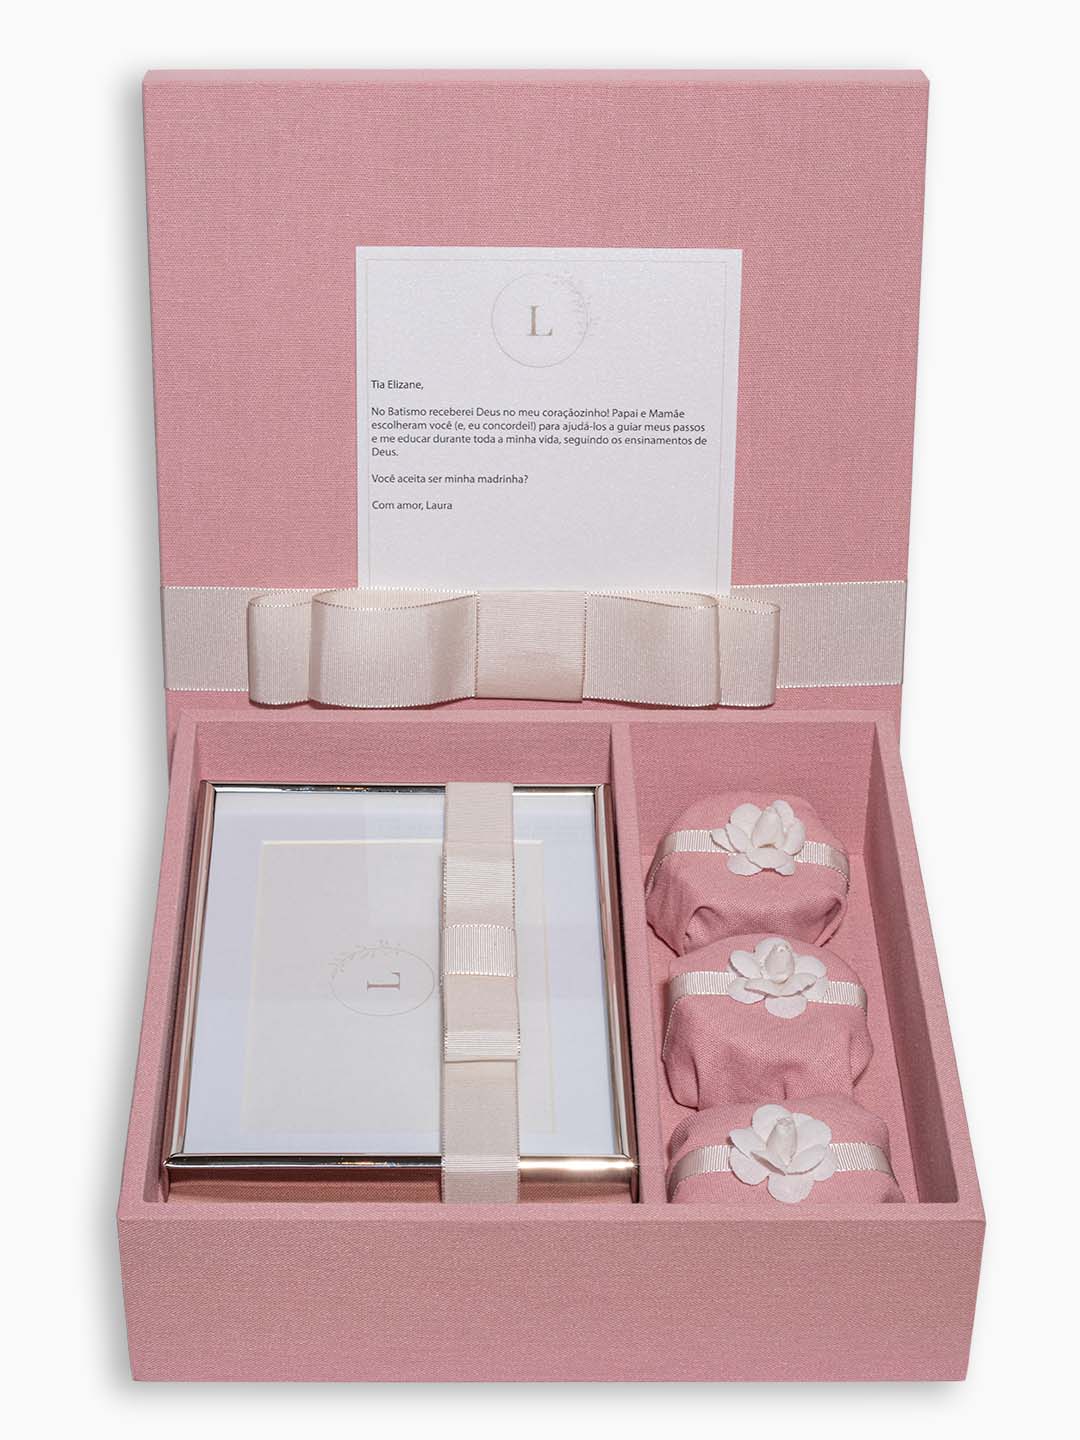 Kit Padrinho Personalizado VI com porta retrato, 3 pães de mel, convite e caixa forrada no tom rosa envelhecido com fita off white